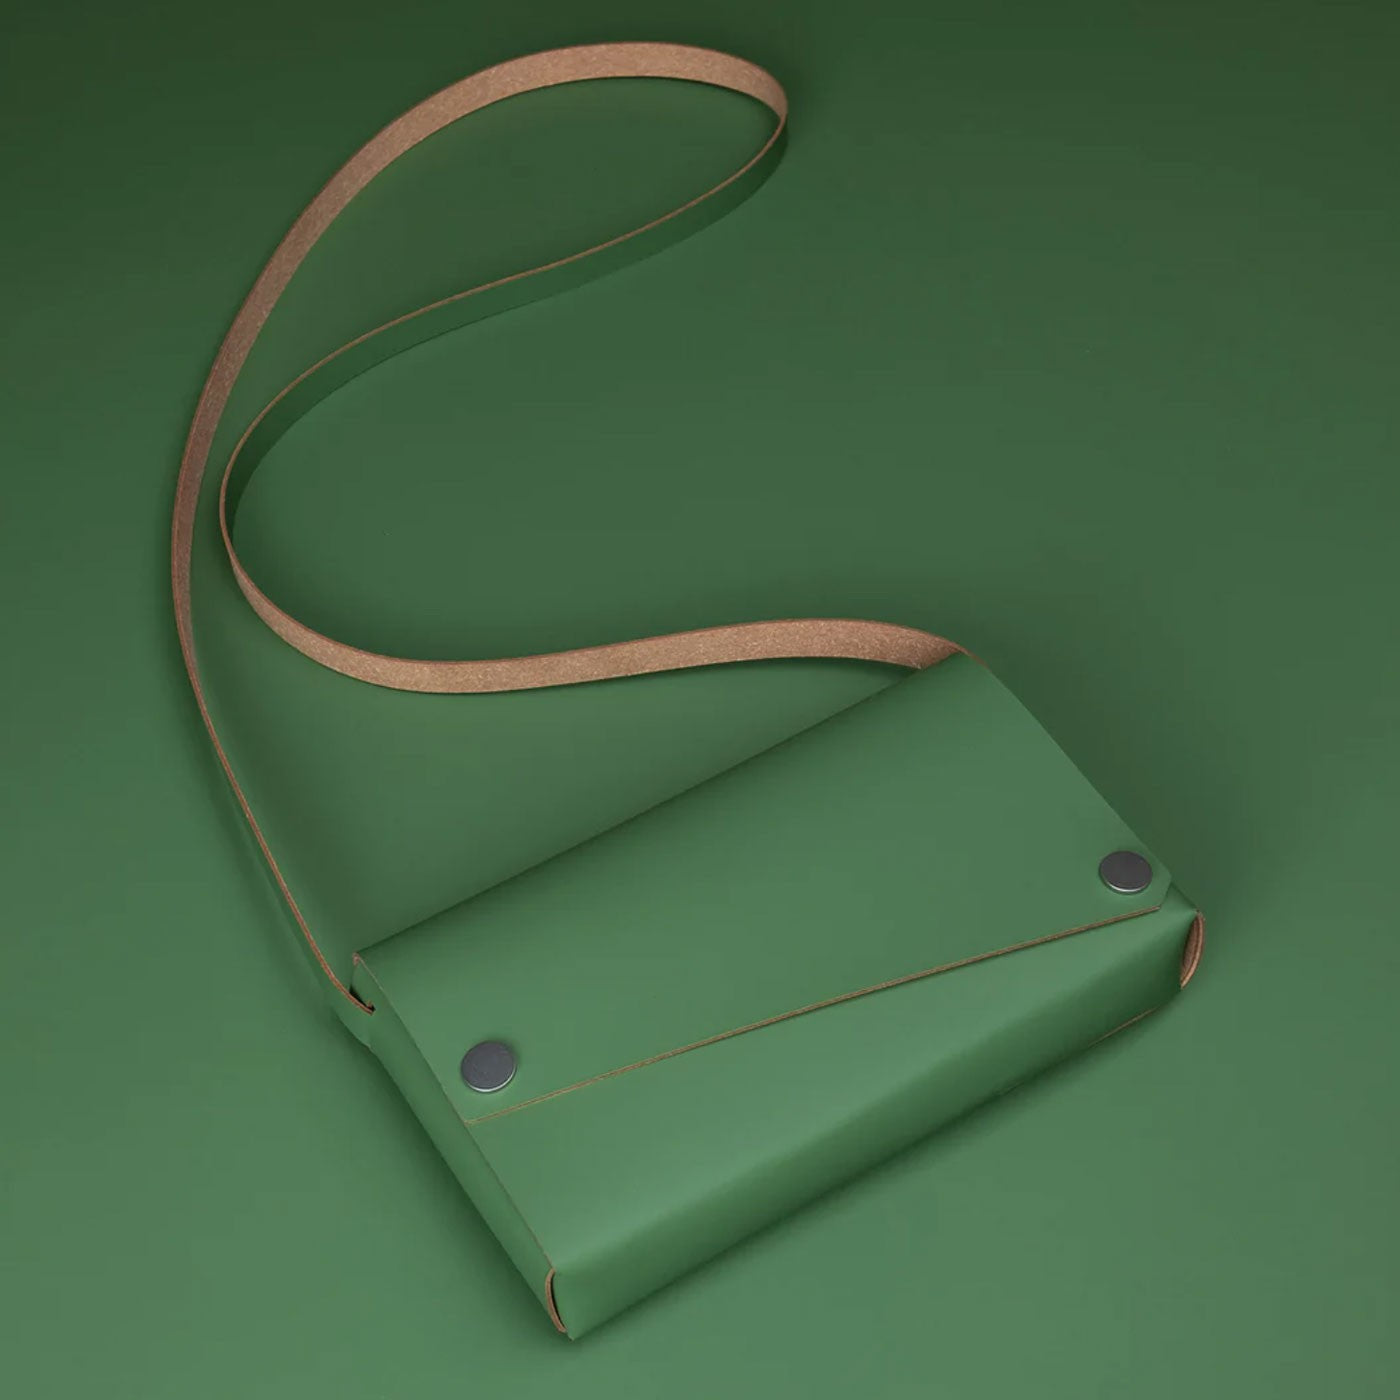 Læder Taske, Grøn - Lemur Design